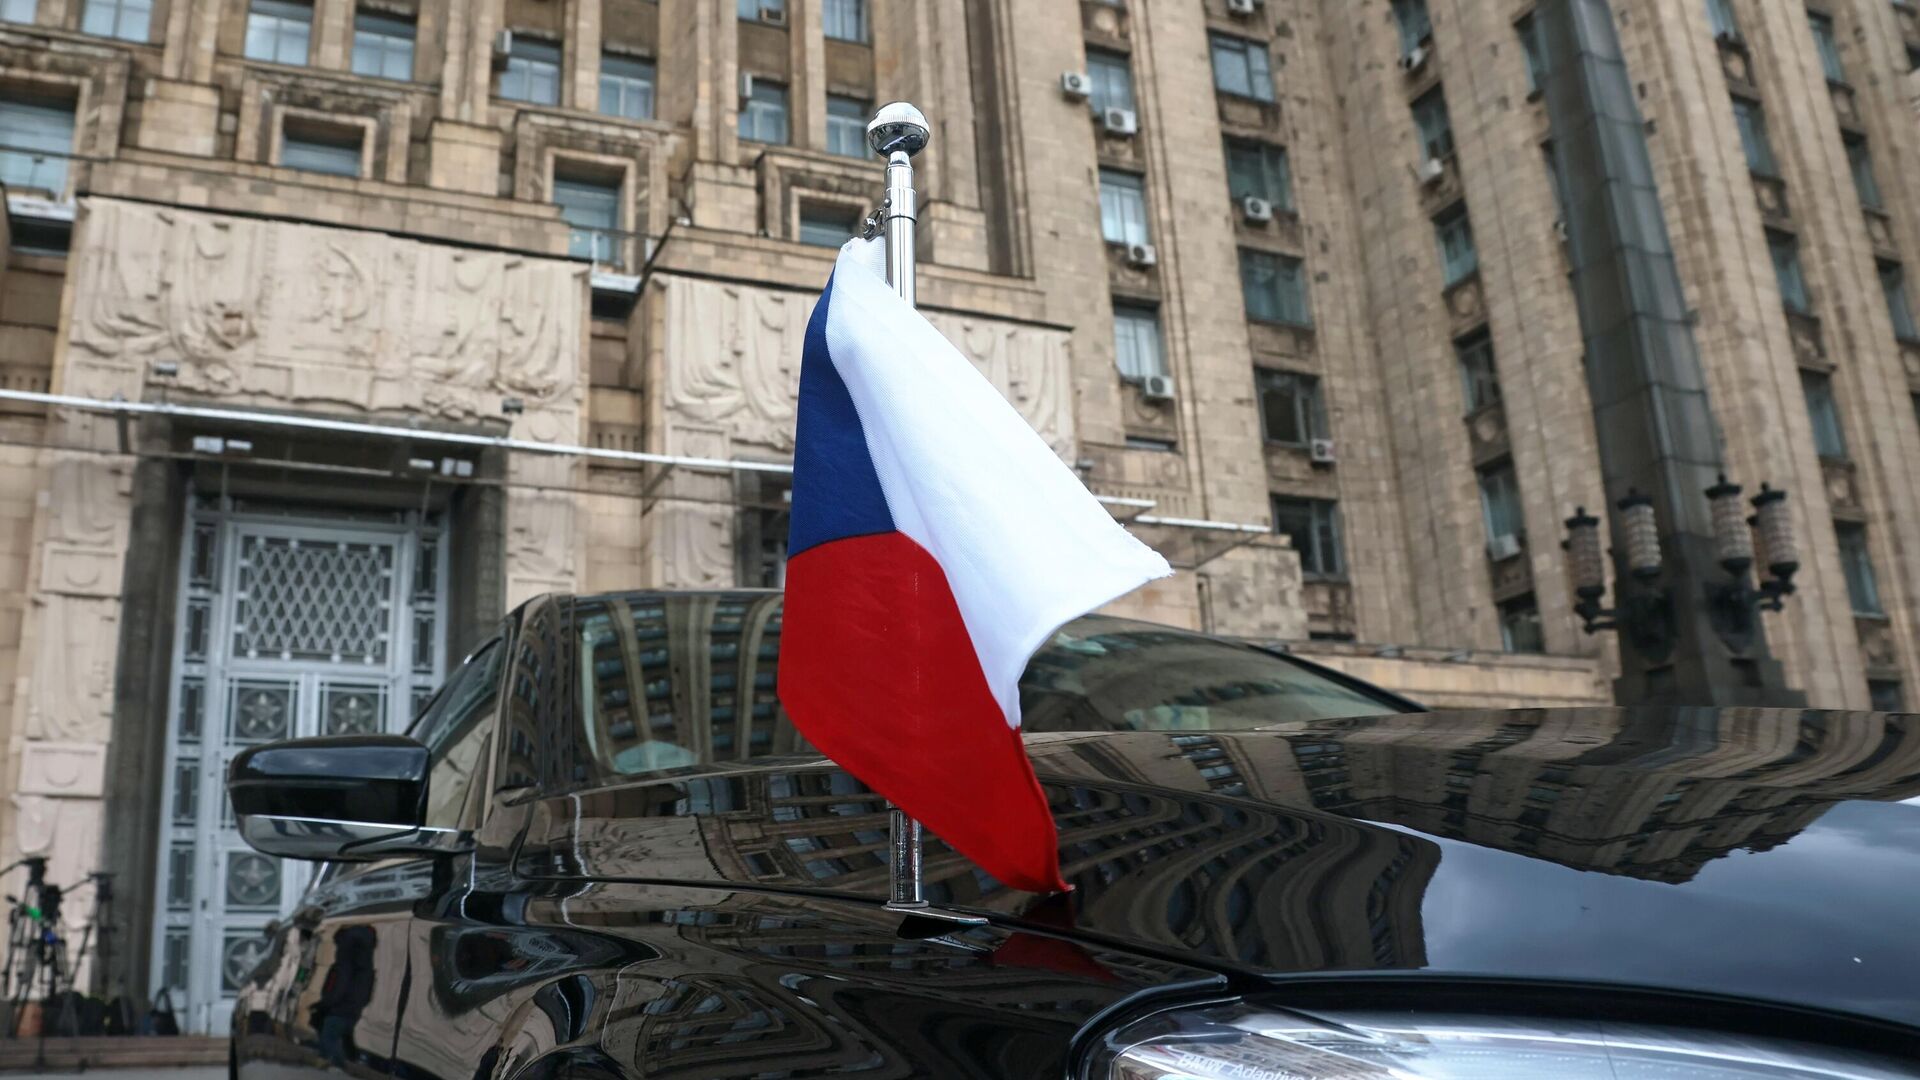 Автомобиль посольства Чехии в РФ возле здания МИД РФ в Москве - РИА Новости, 1920, 25.06.2021